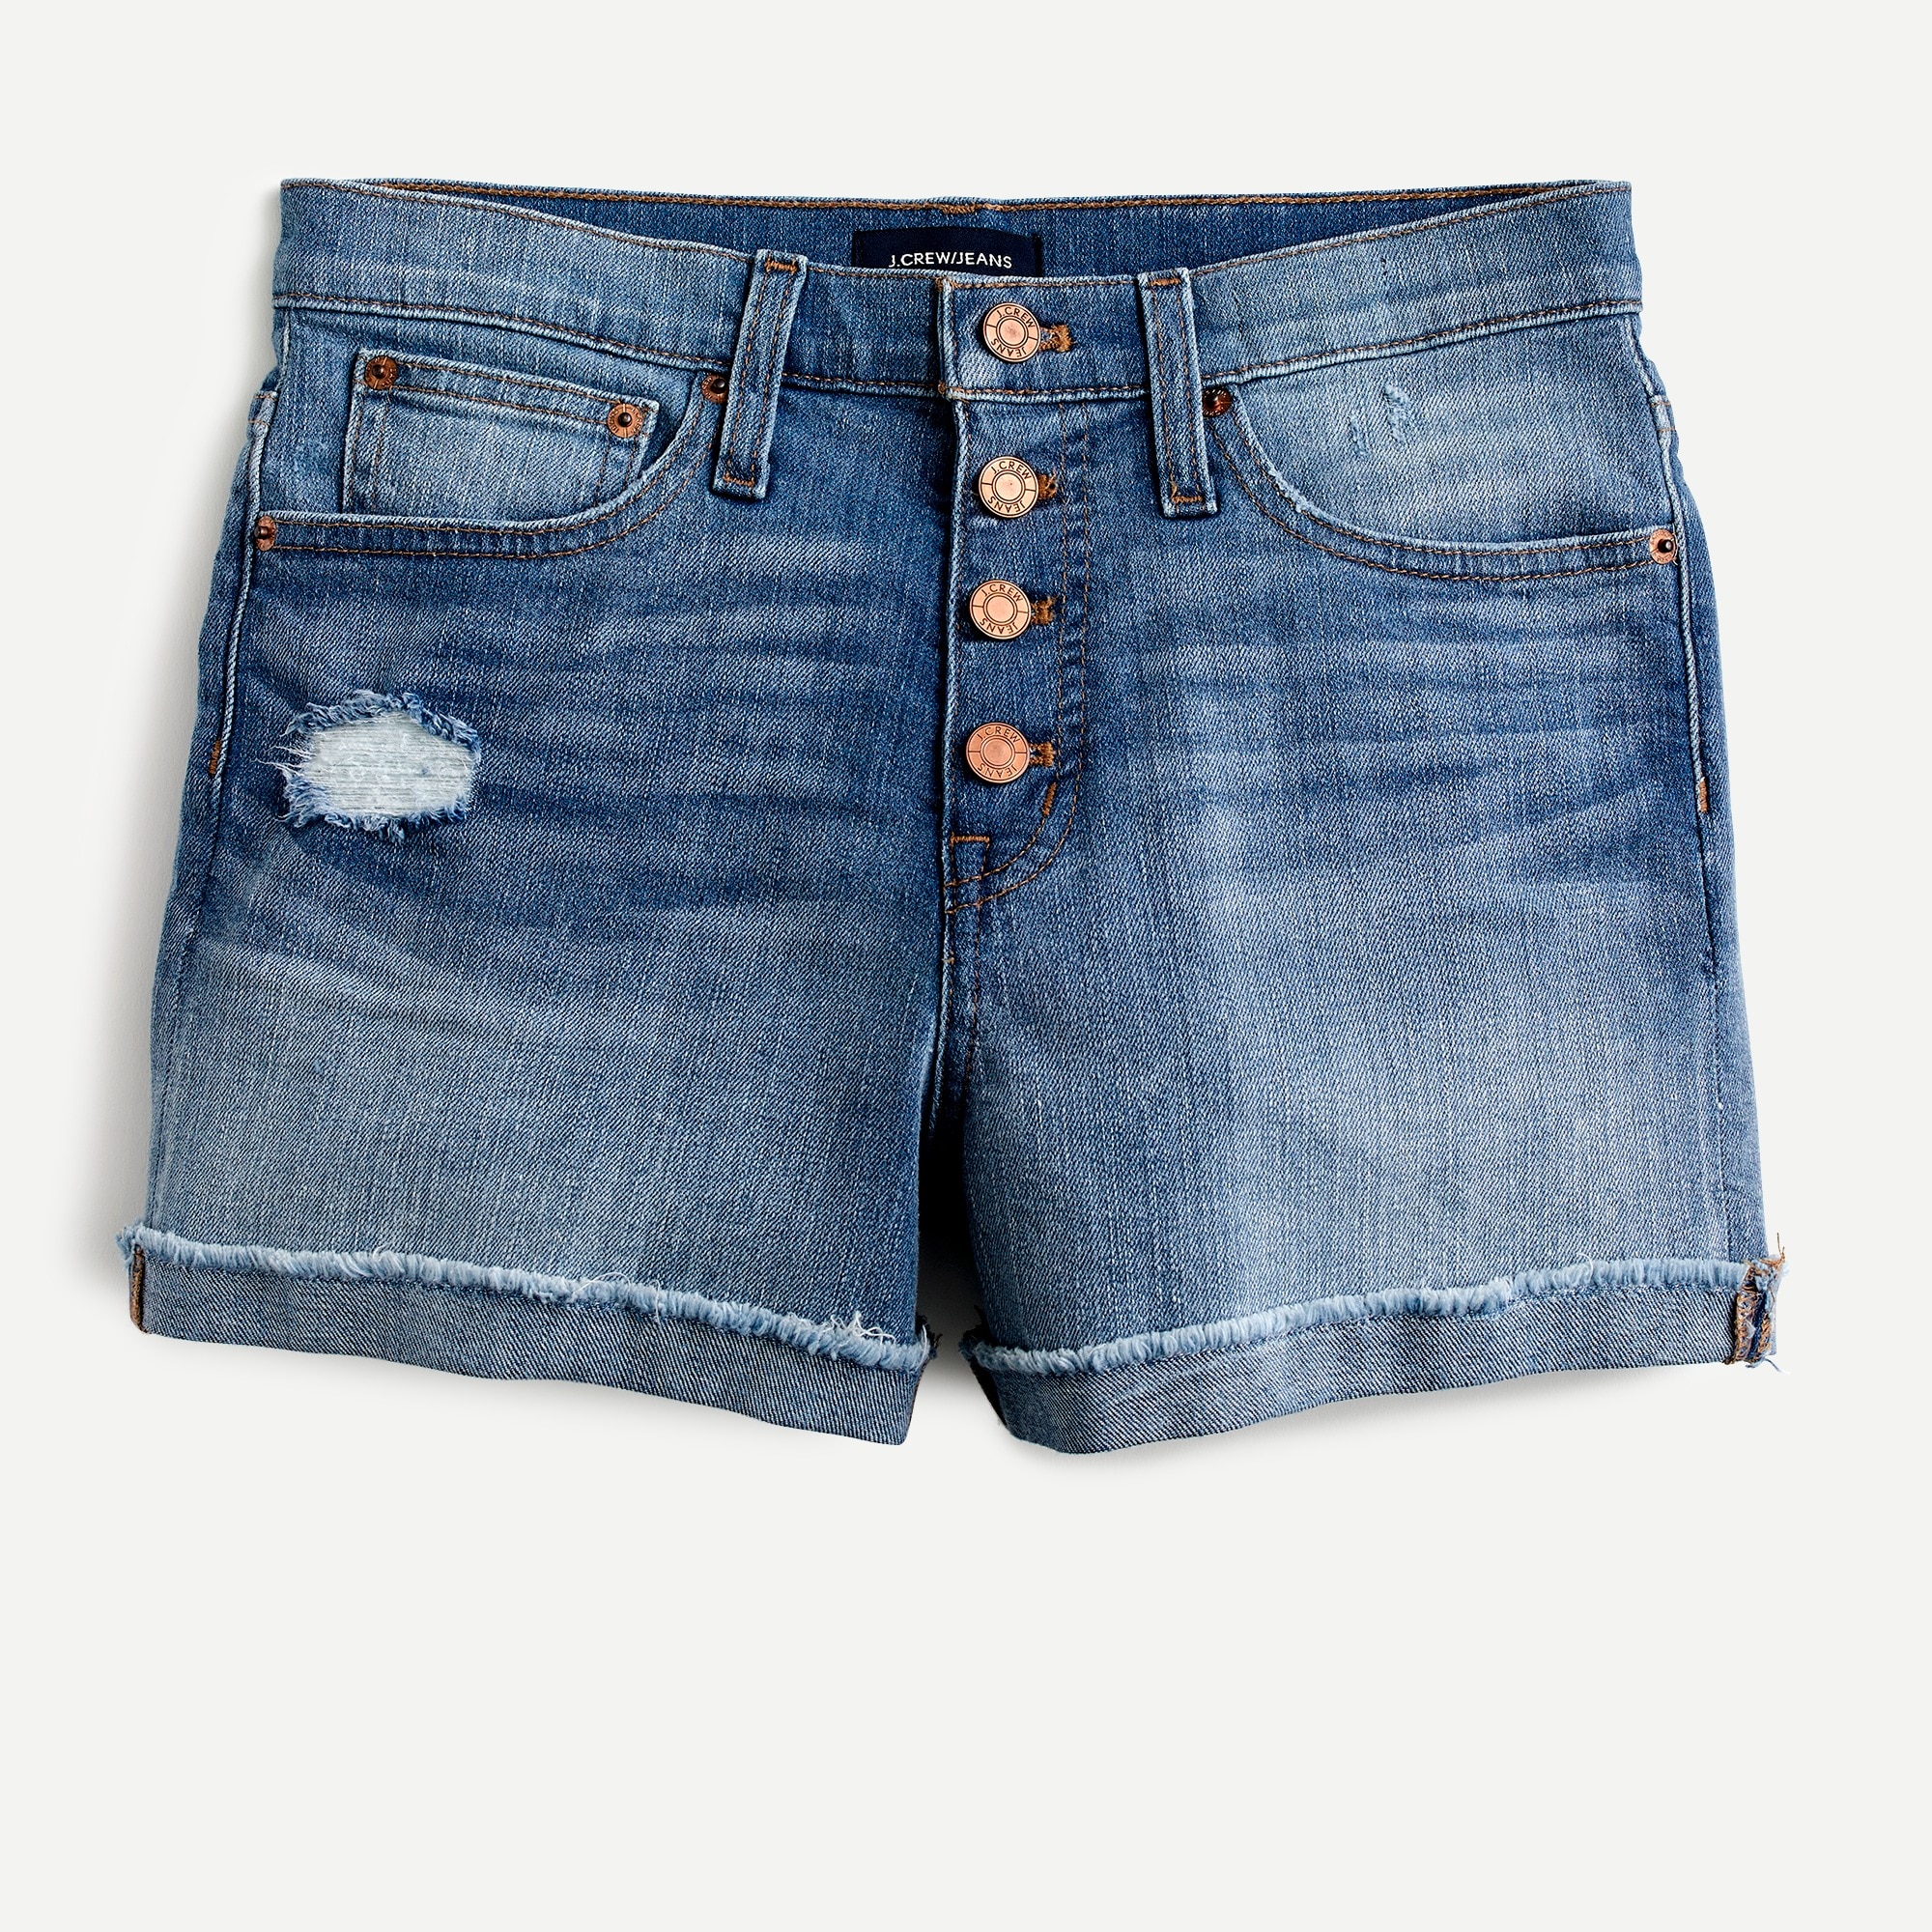 buy denim shorts online